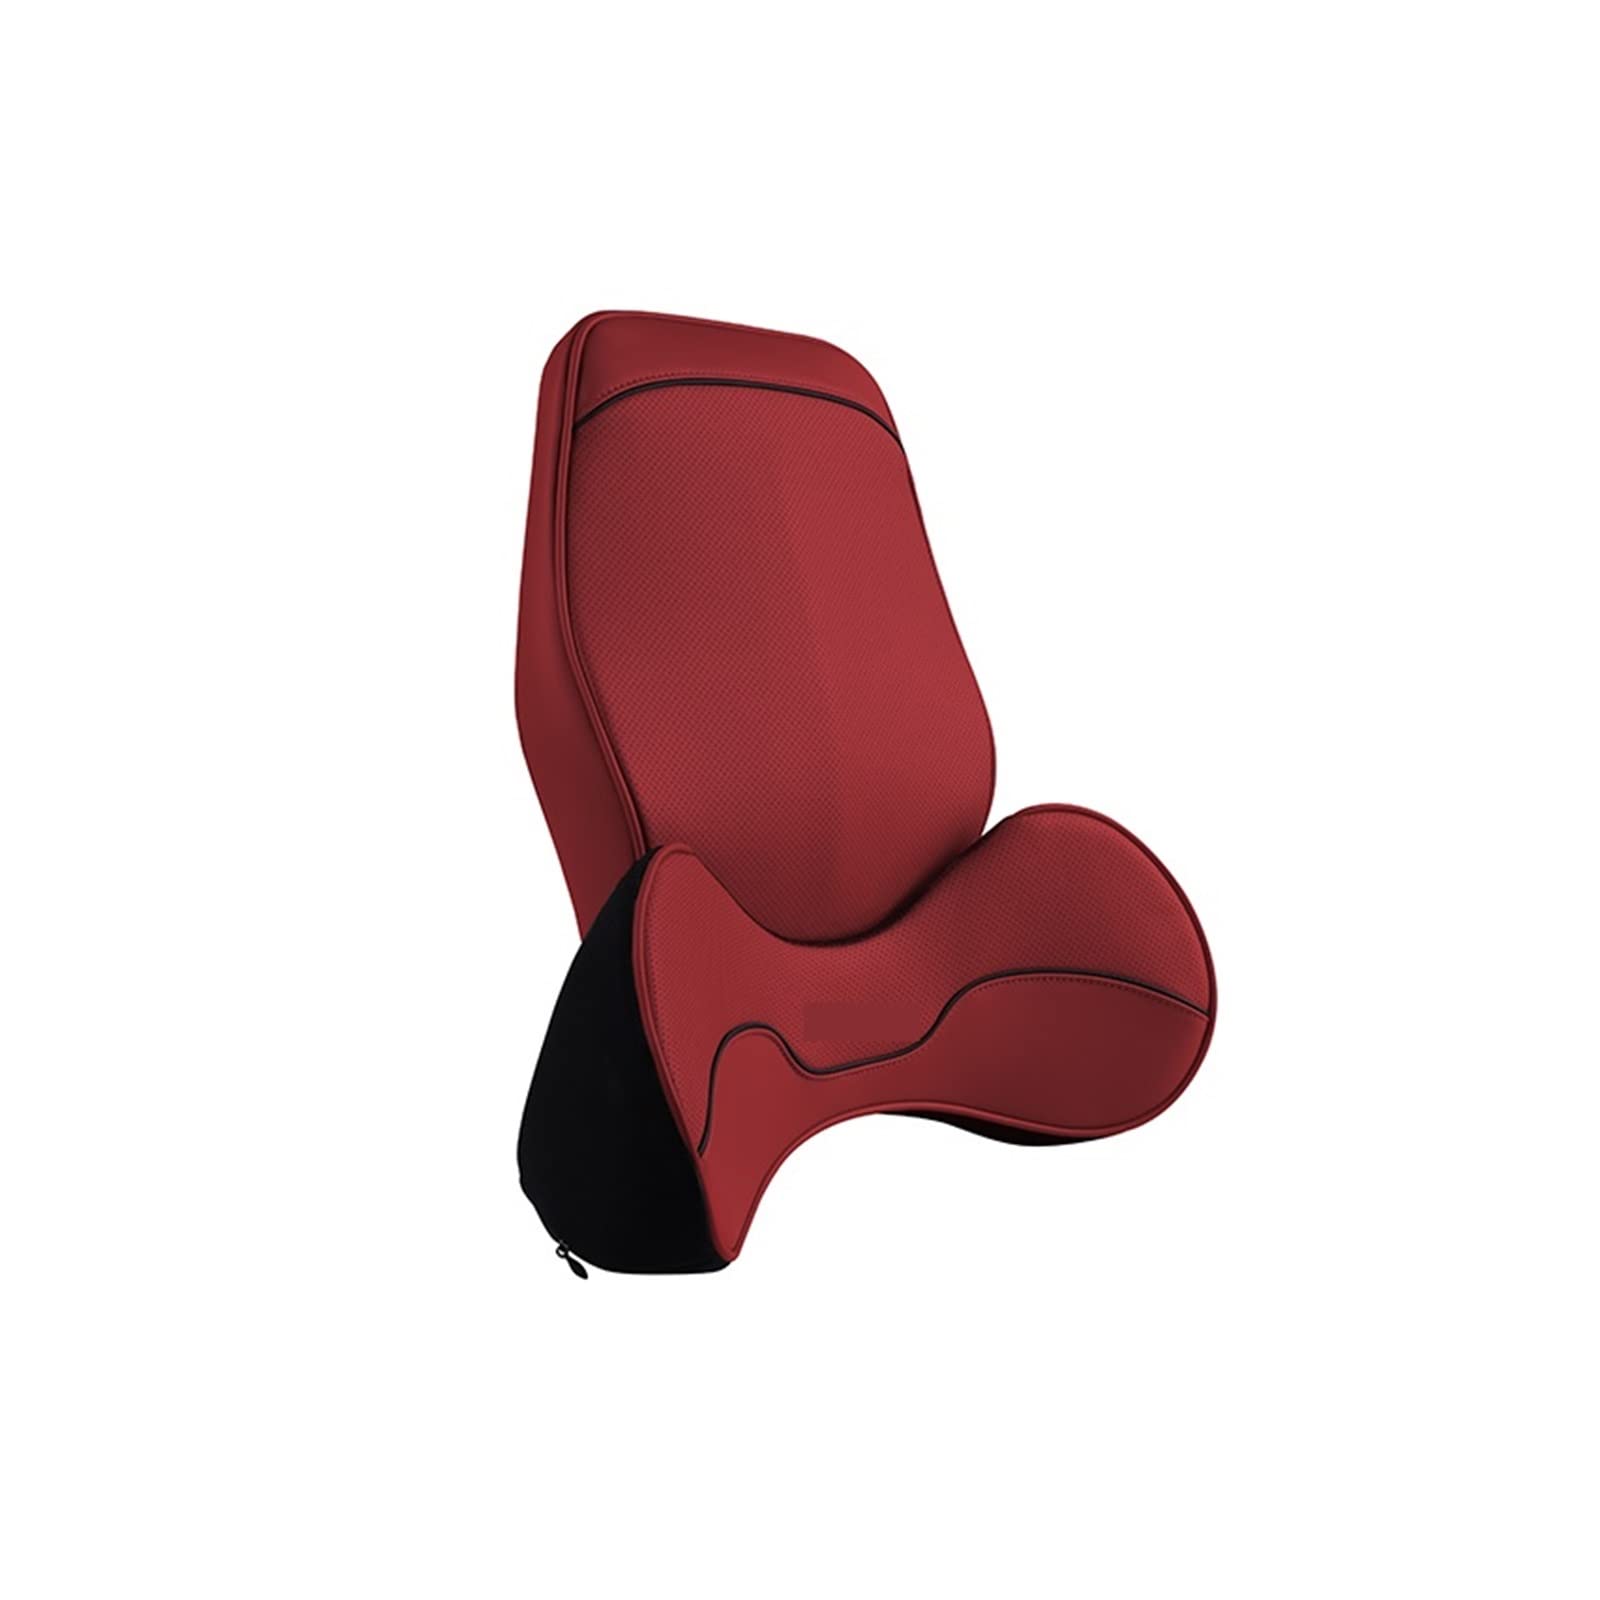 送料無料TAVENS Comfortable car Pillows Headrest Pillow Car Neck Rest Head Support Cushion Breathable Memory Foam Slow Reb